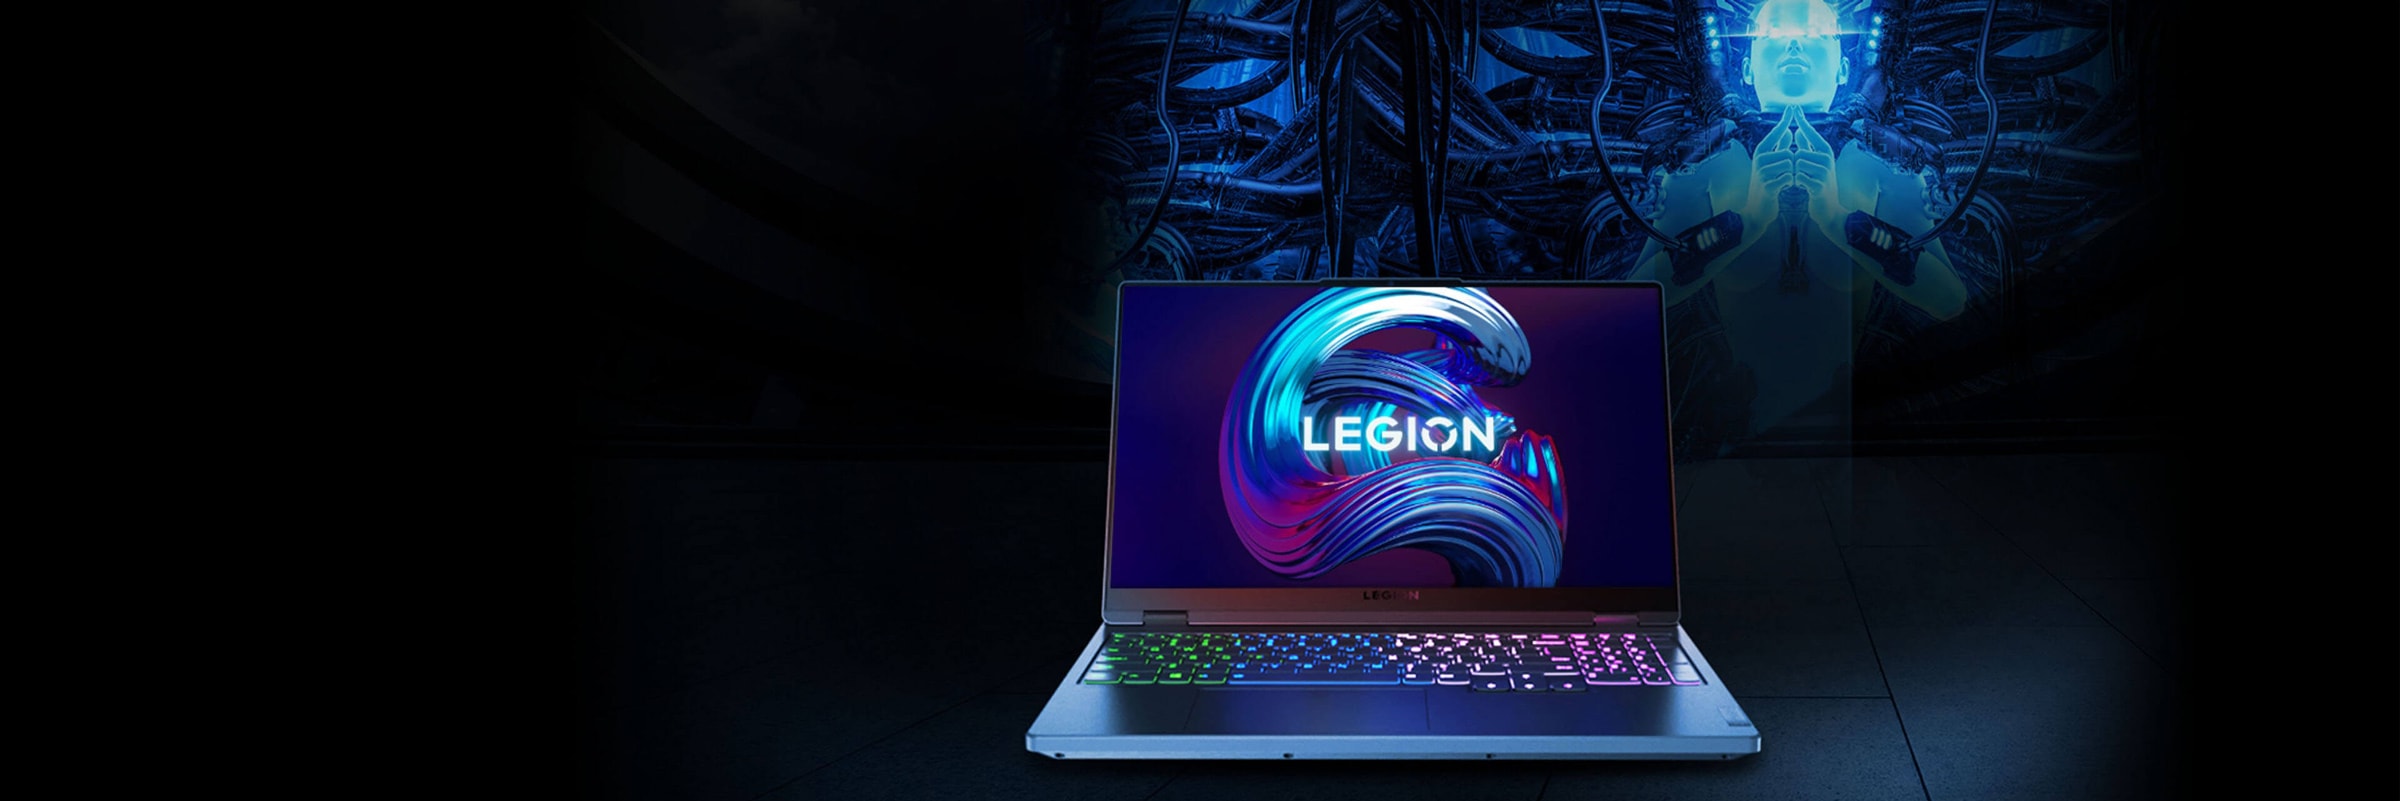 Legion 筆記本電腦以正面打開 90 度，展現顯示屏和鍵盤。